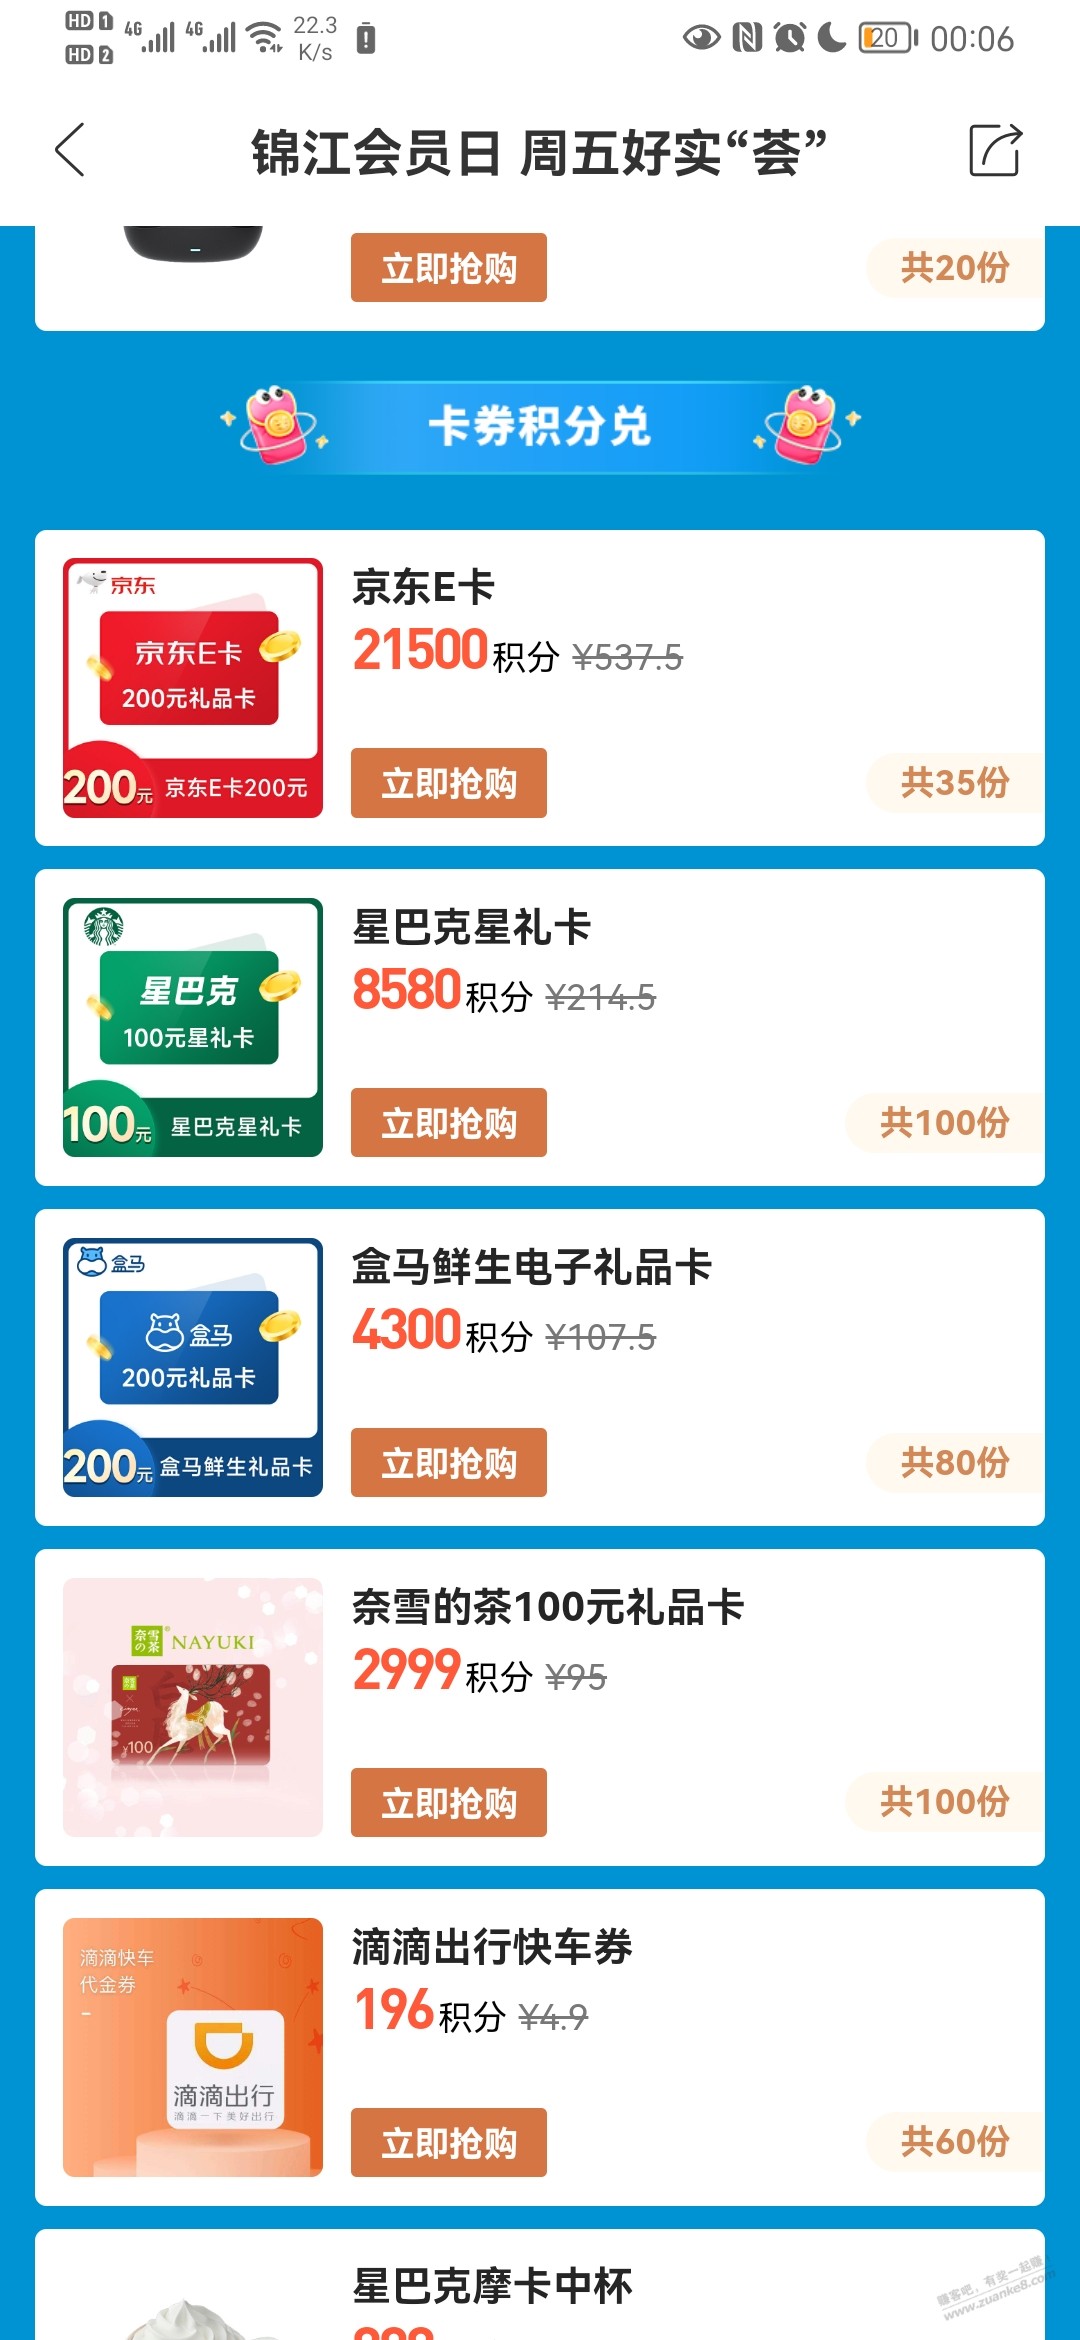 锦江积分21500换500京东卡-惠小助(52huixz.com)